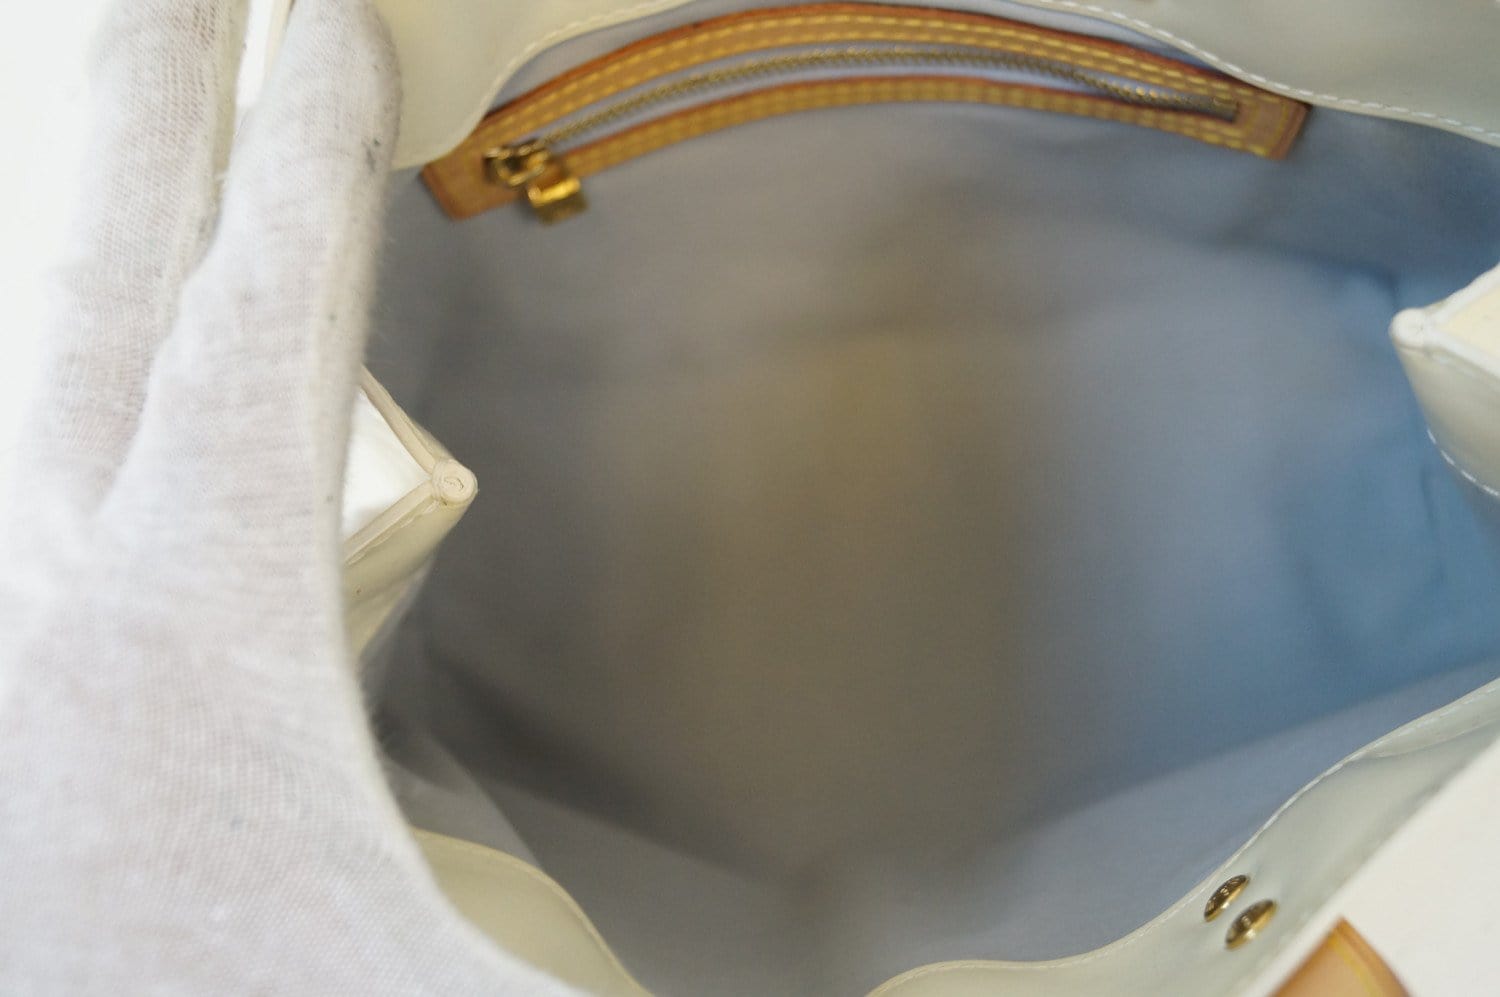 Louis Vuitton Reade Handbag 326835